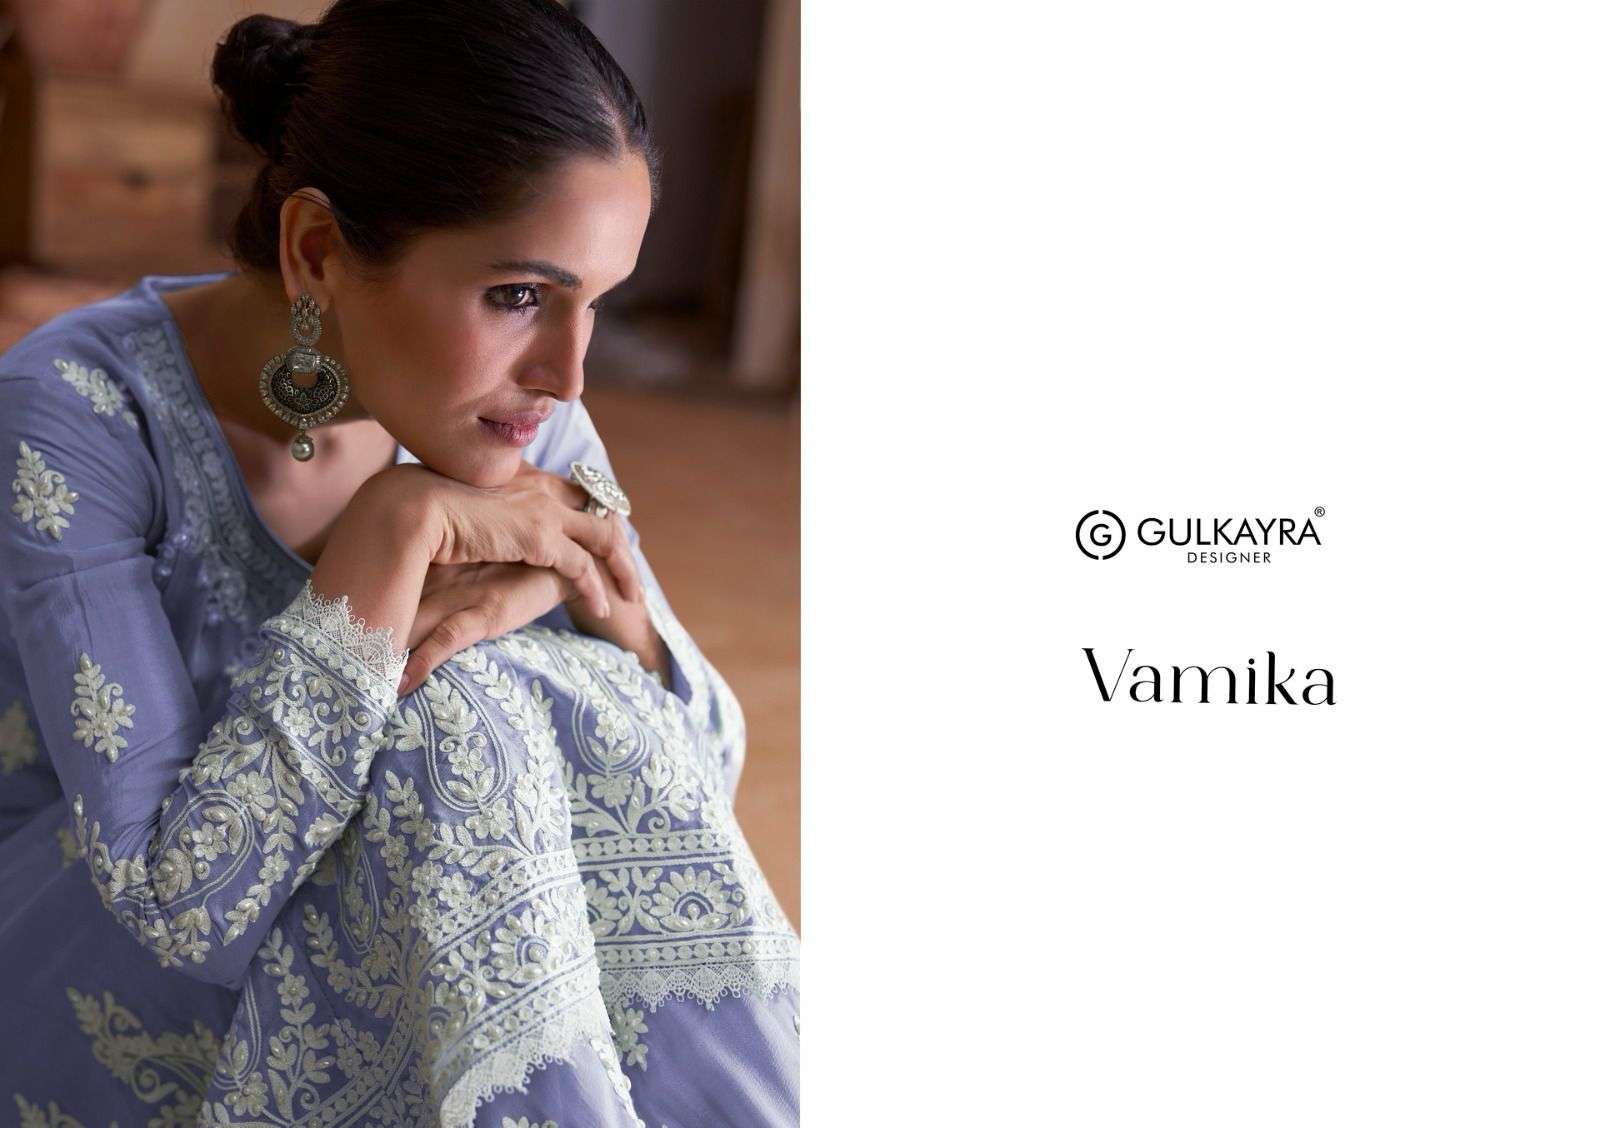 gulkayra designer vamika 7405 colour series designer sharara salwar kameez at wholesaler price india gujarat